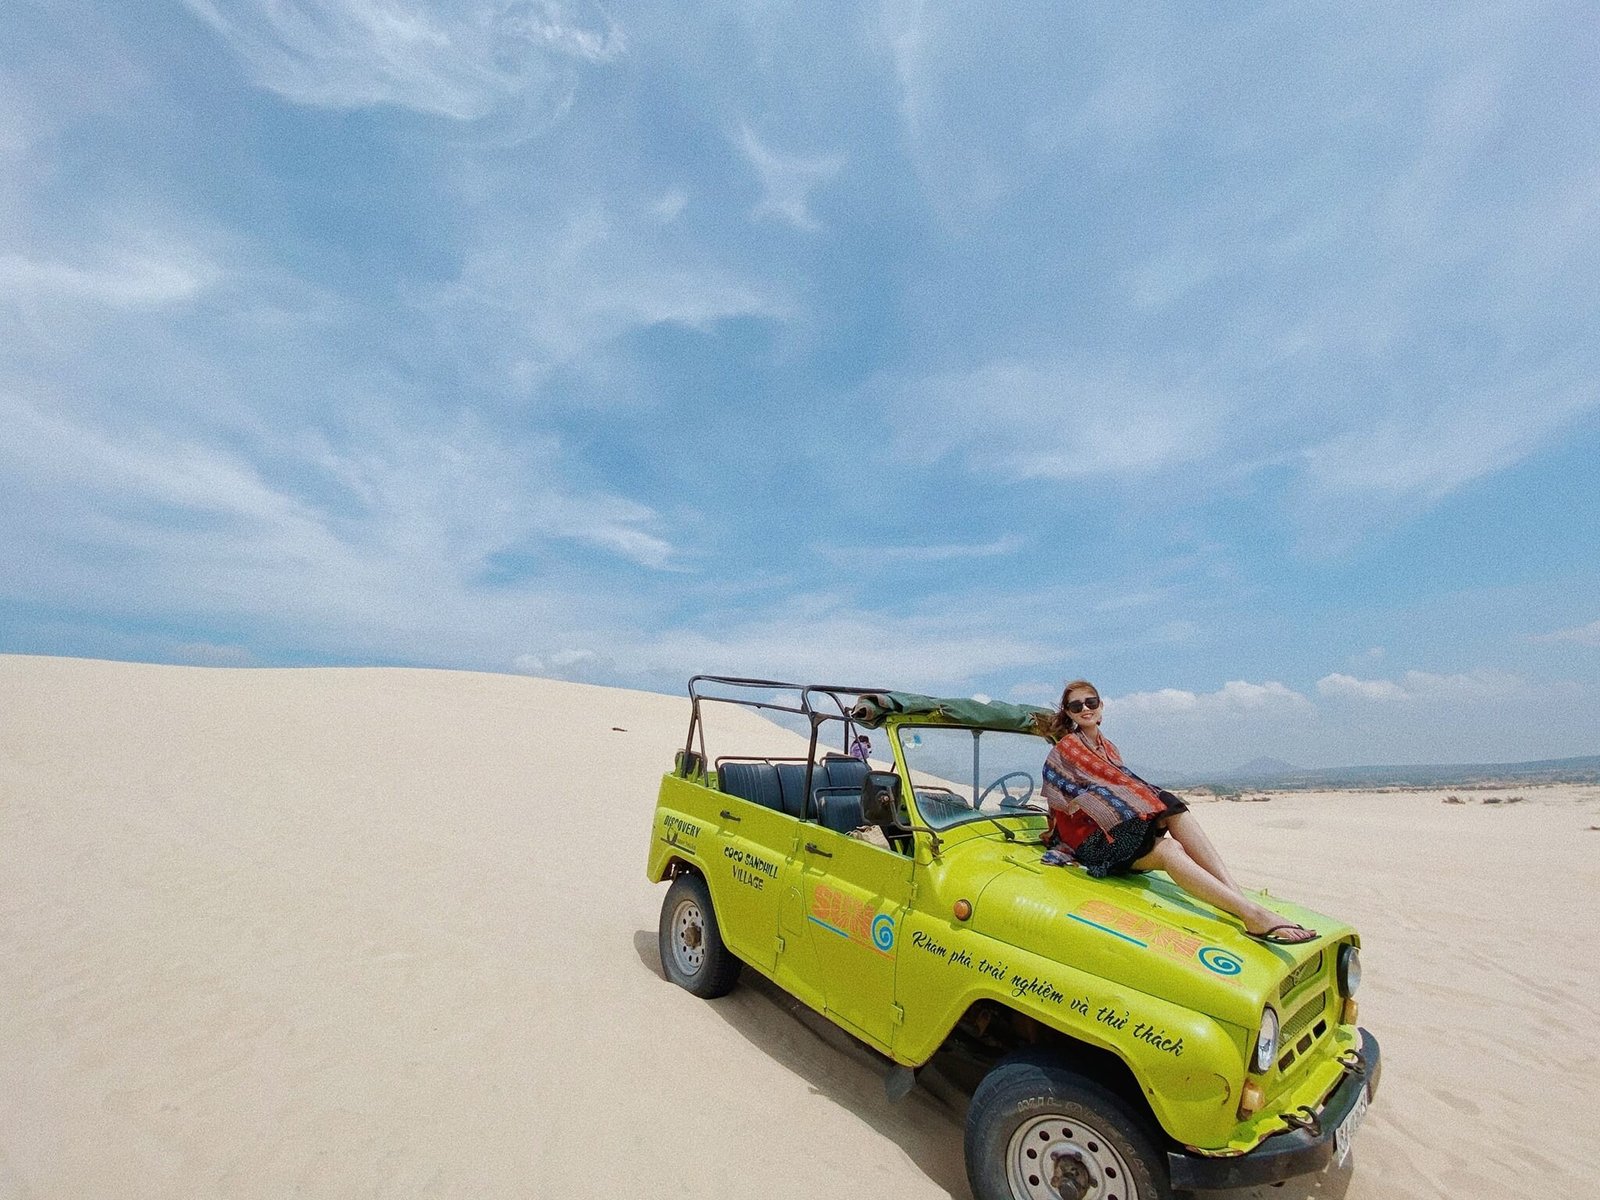 Khám phá cảnh đẹp đồi cát Mũi Dinh Ninh Thuận bằng xe Jeep. Ảnh: Ha Nguyen